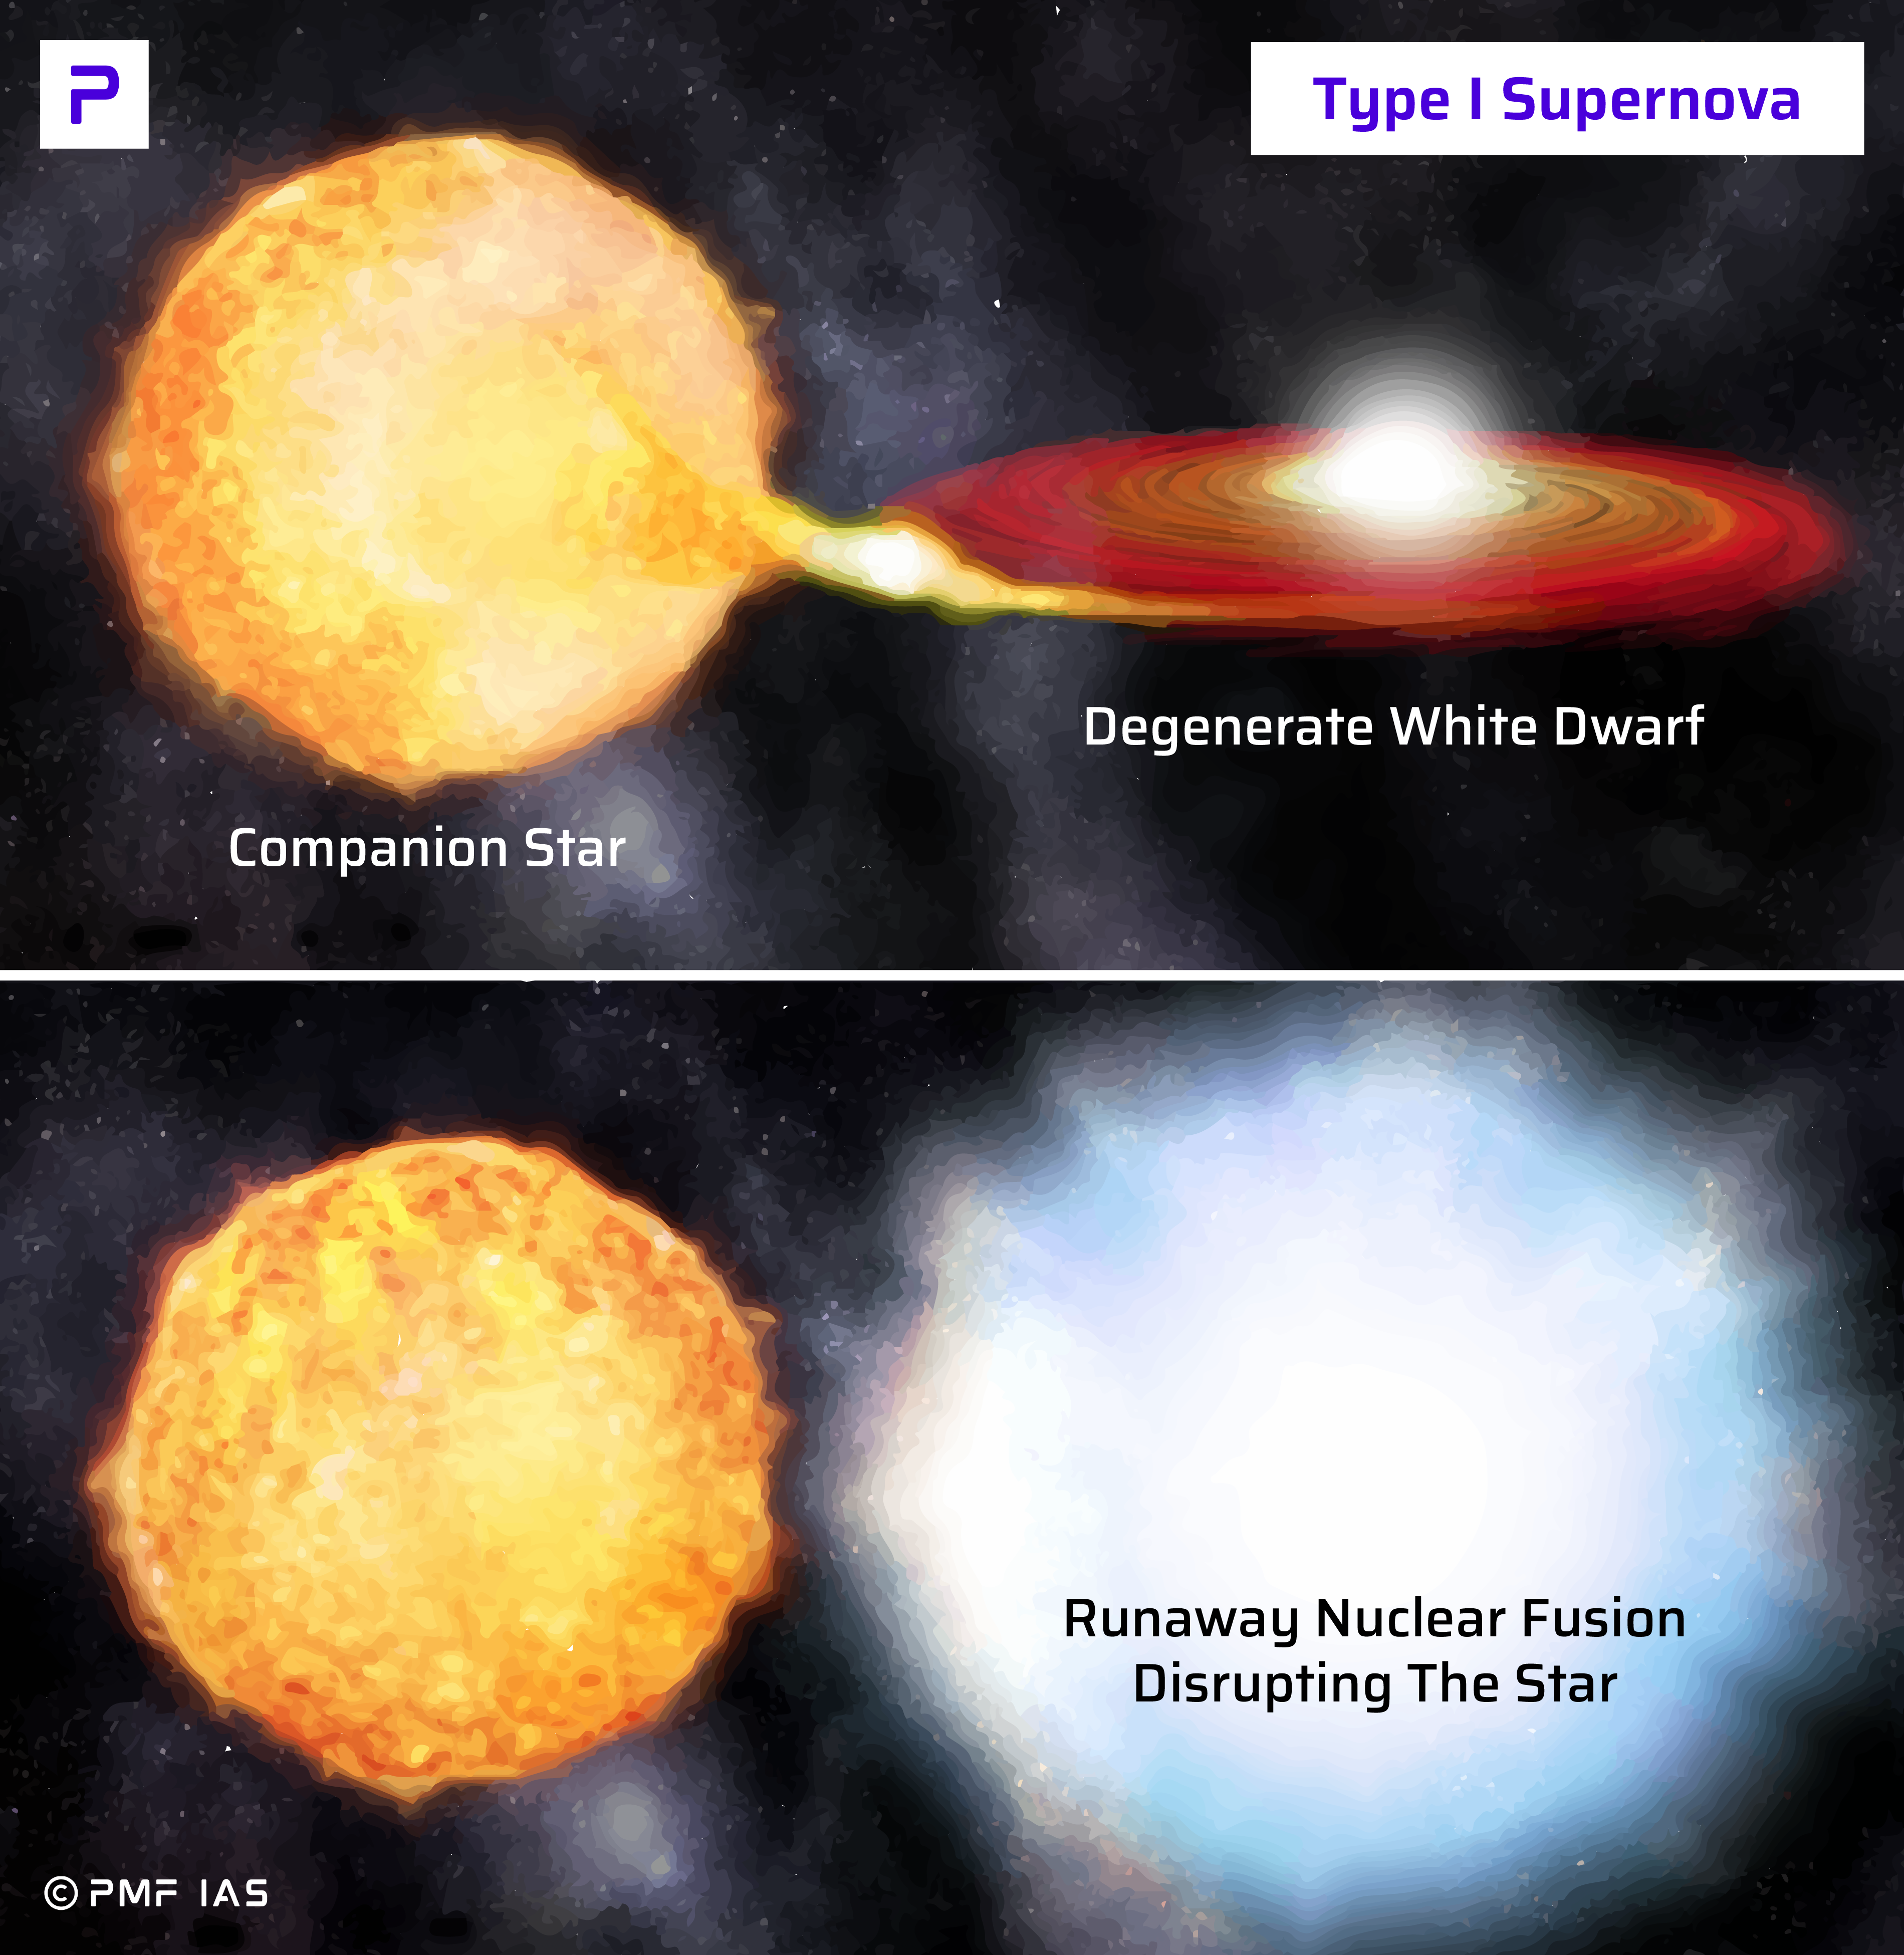 nova vs supernova